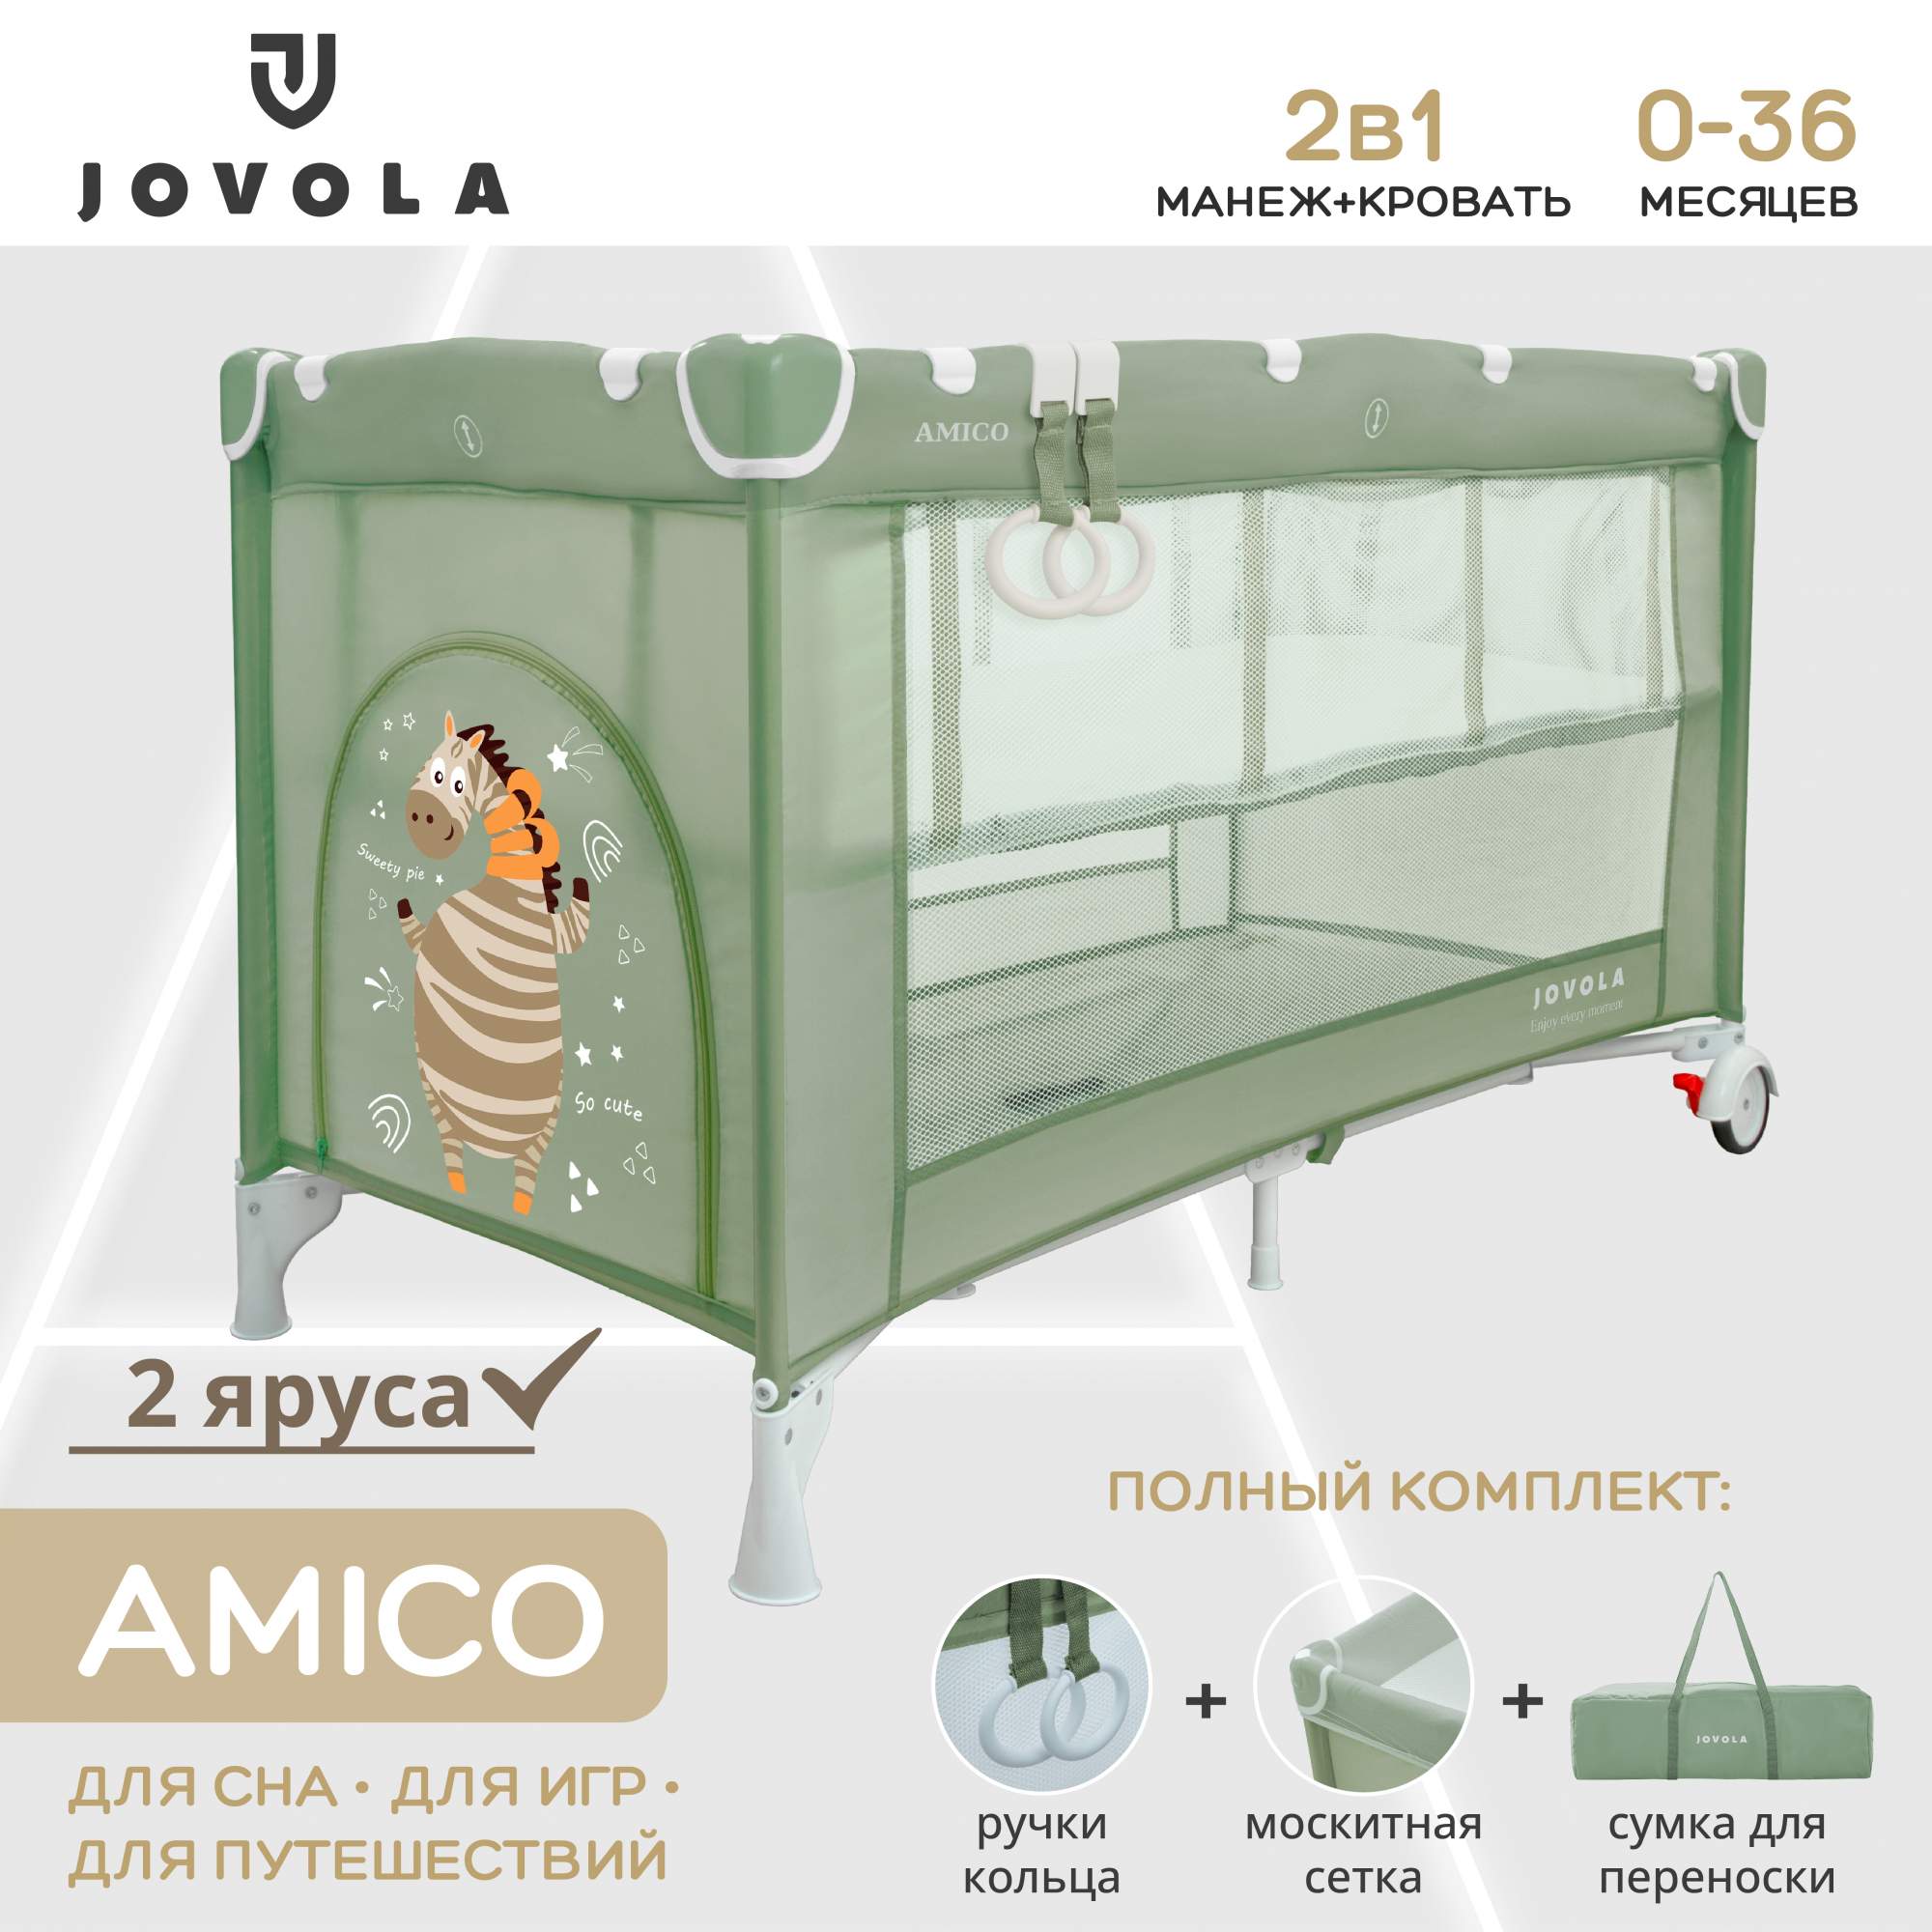 Манеж кровать детский JOVOLA AMICO для новорожденных складной 2 уровня зеленый